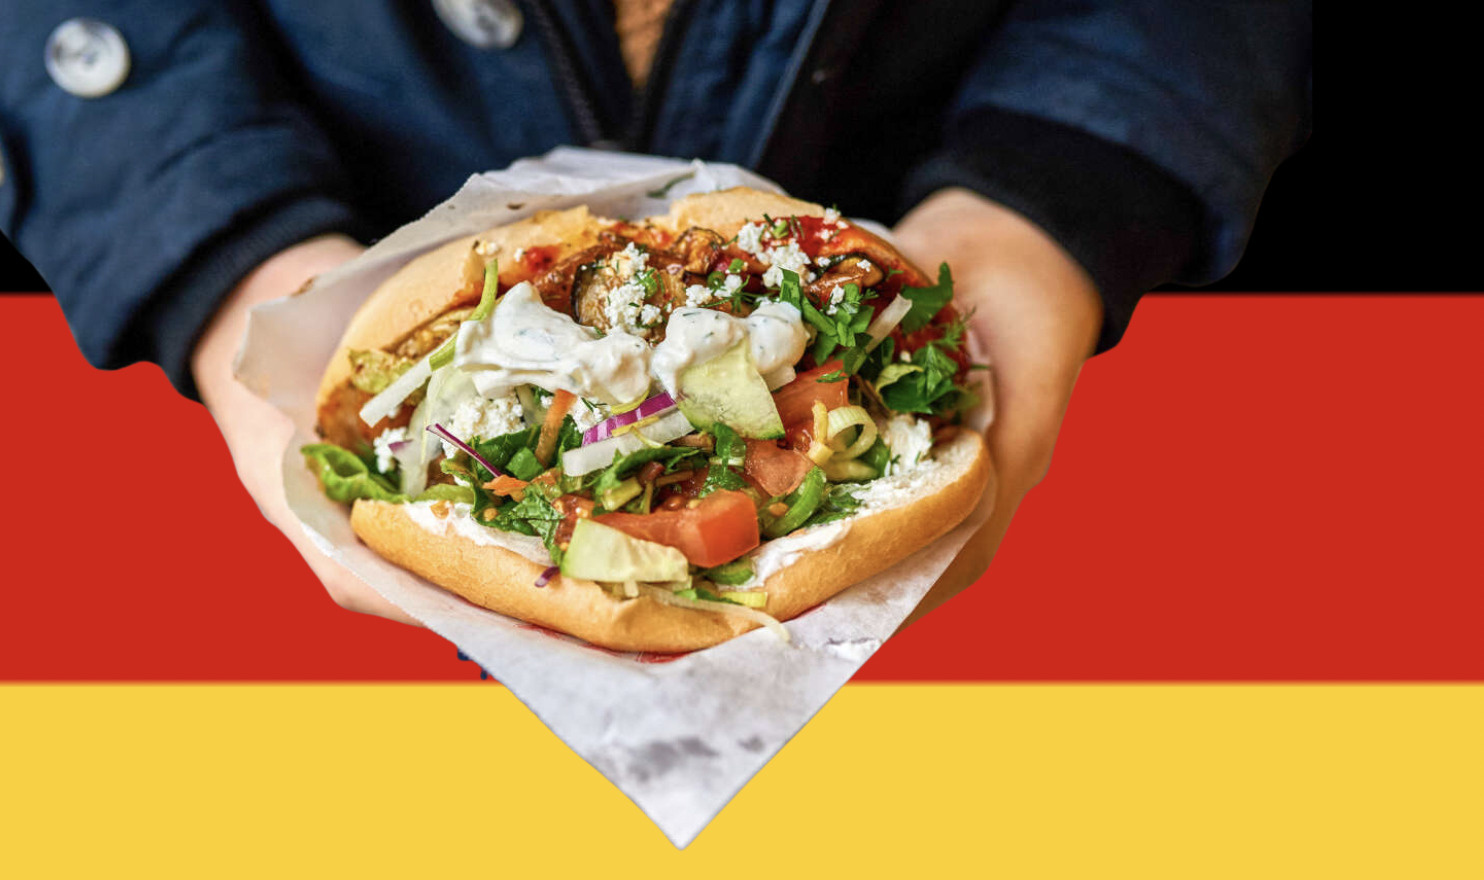 Le Kebab, l’arme anti-inflation de l’extrême gauche allemande